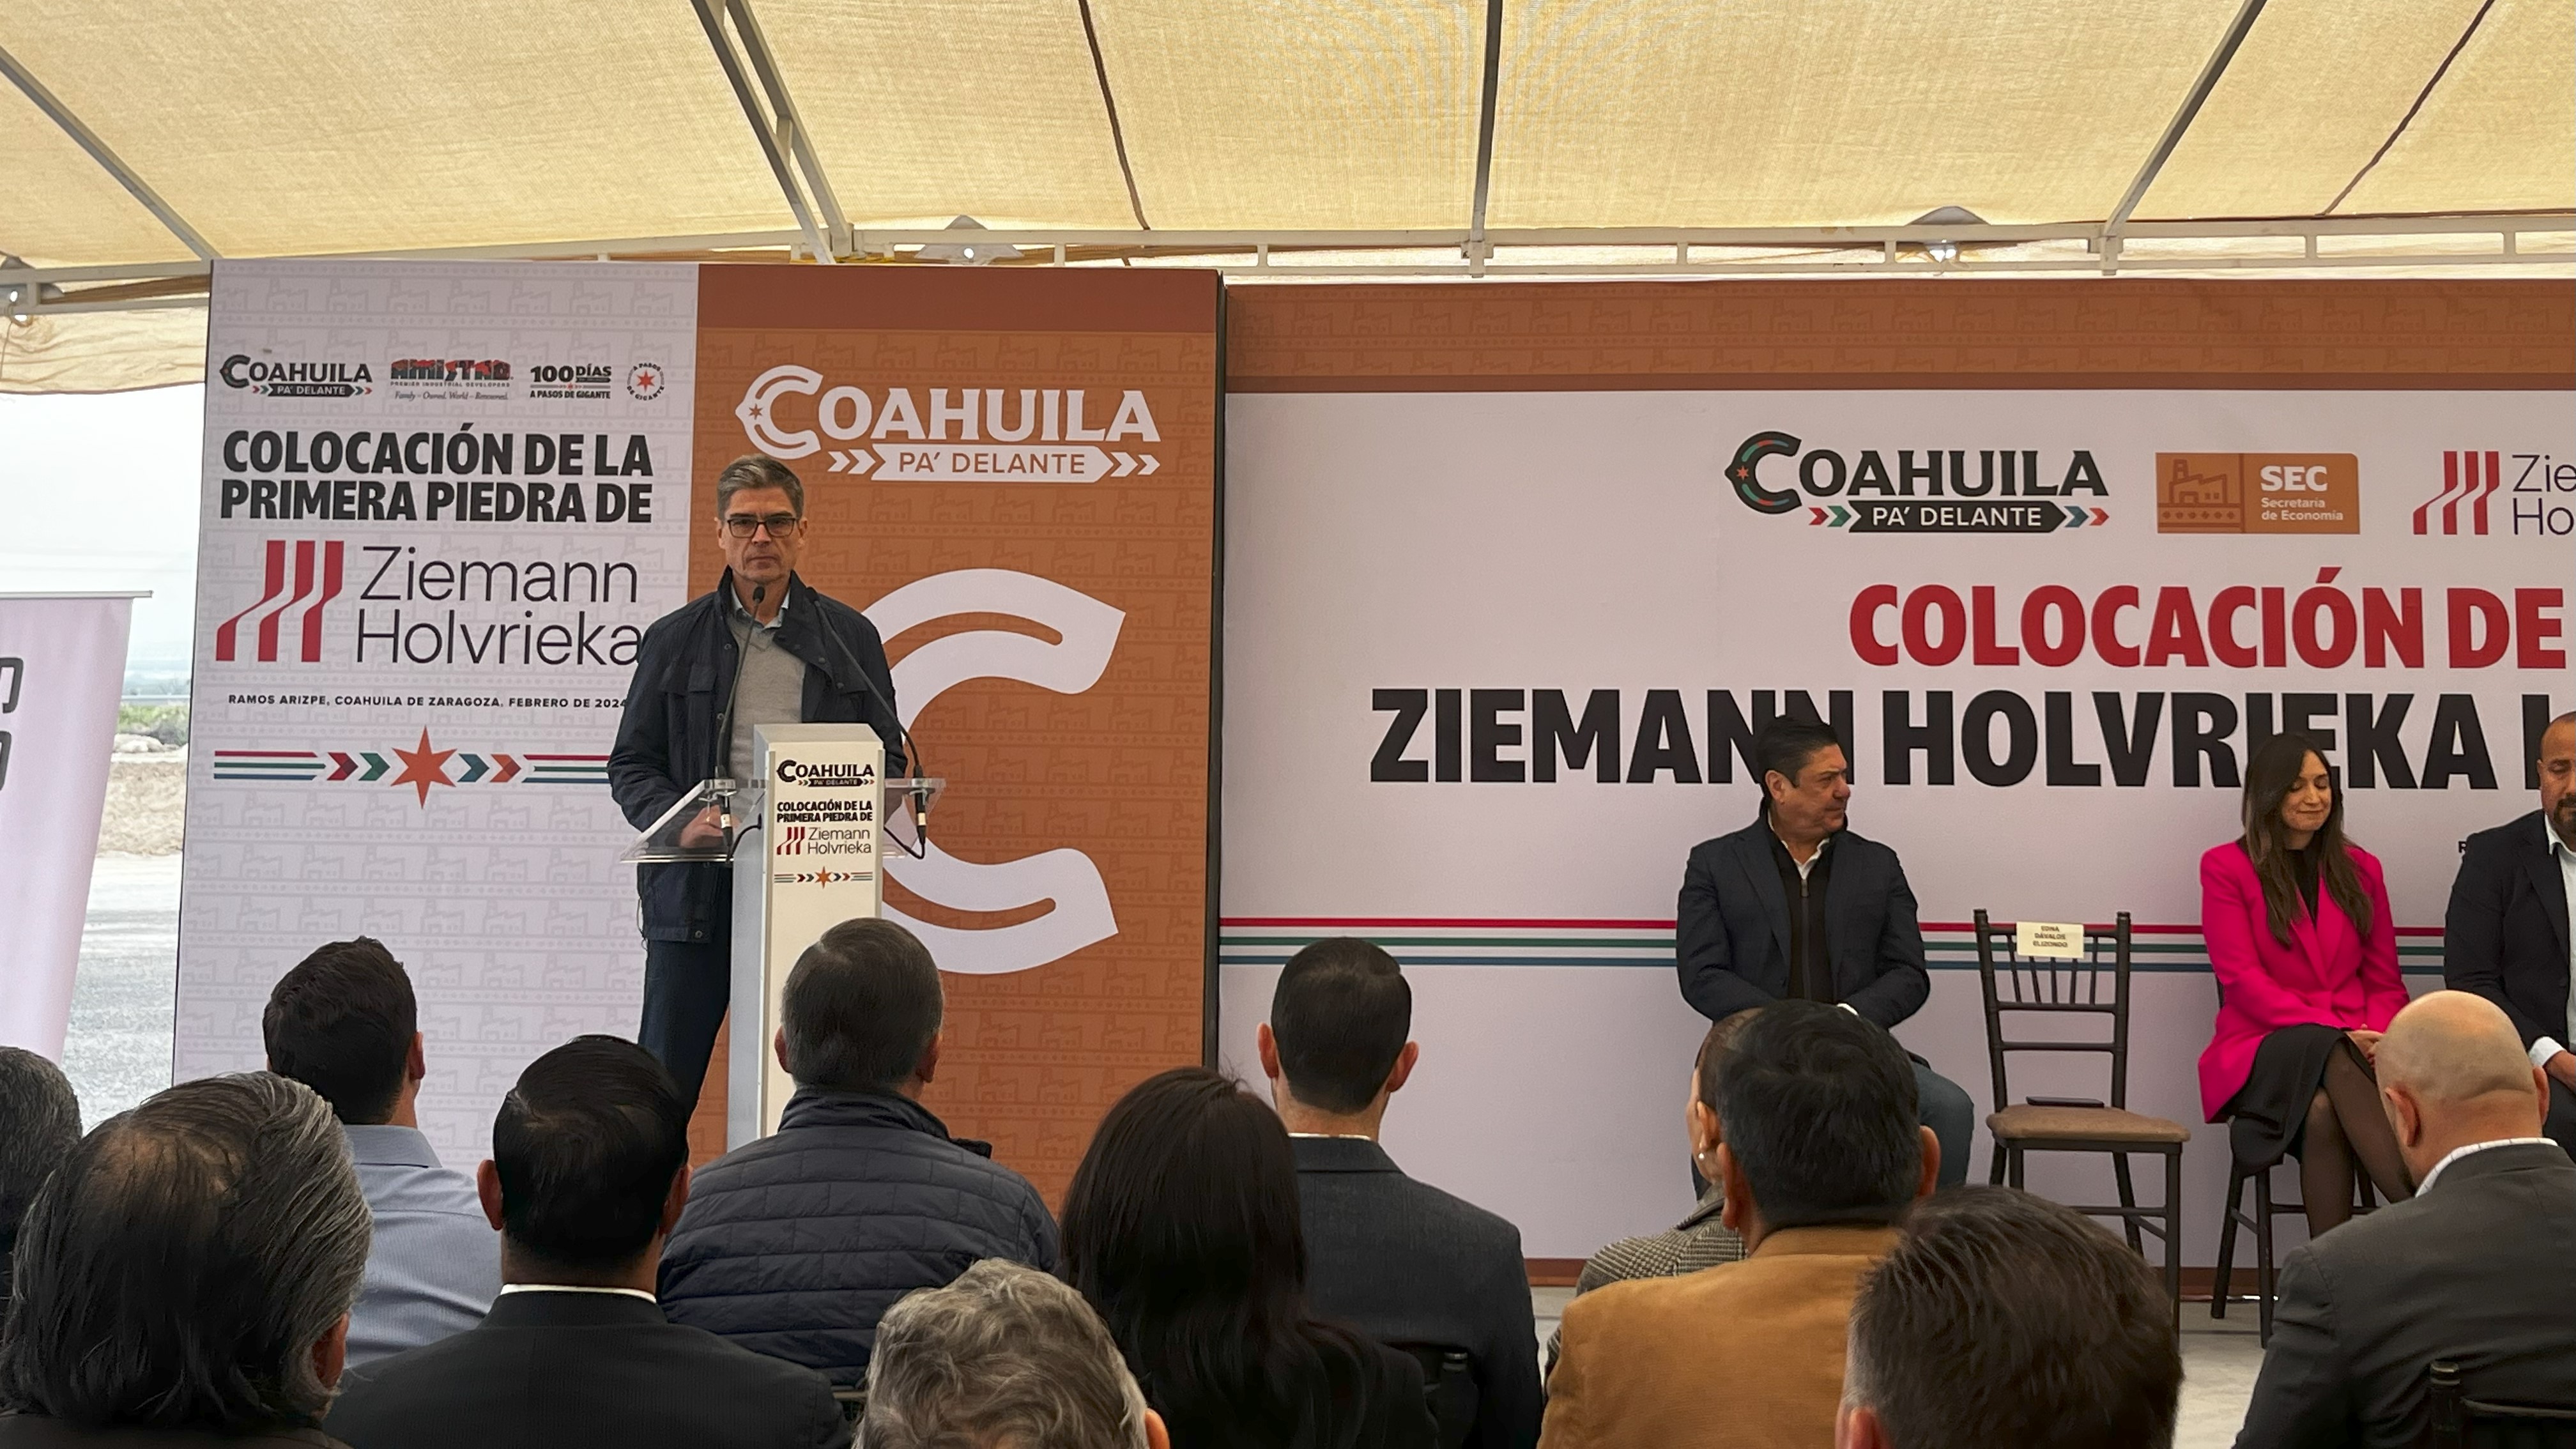 Ziemann Holvrieka impulsará la industria de alimentos en Coahuila